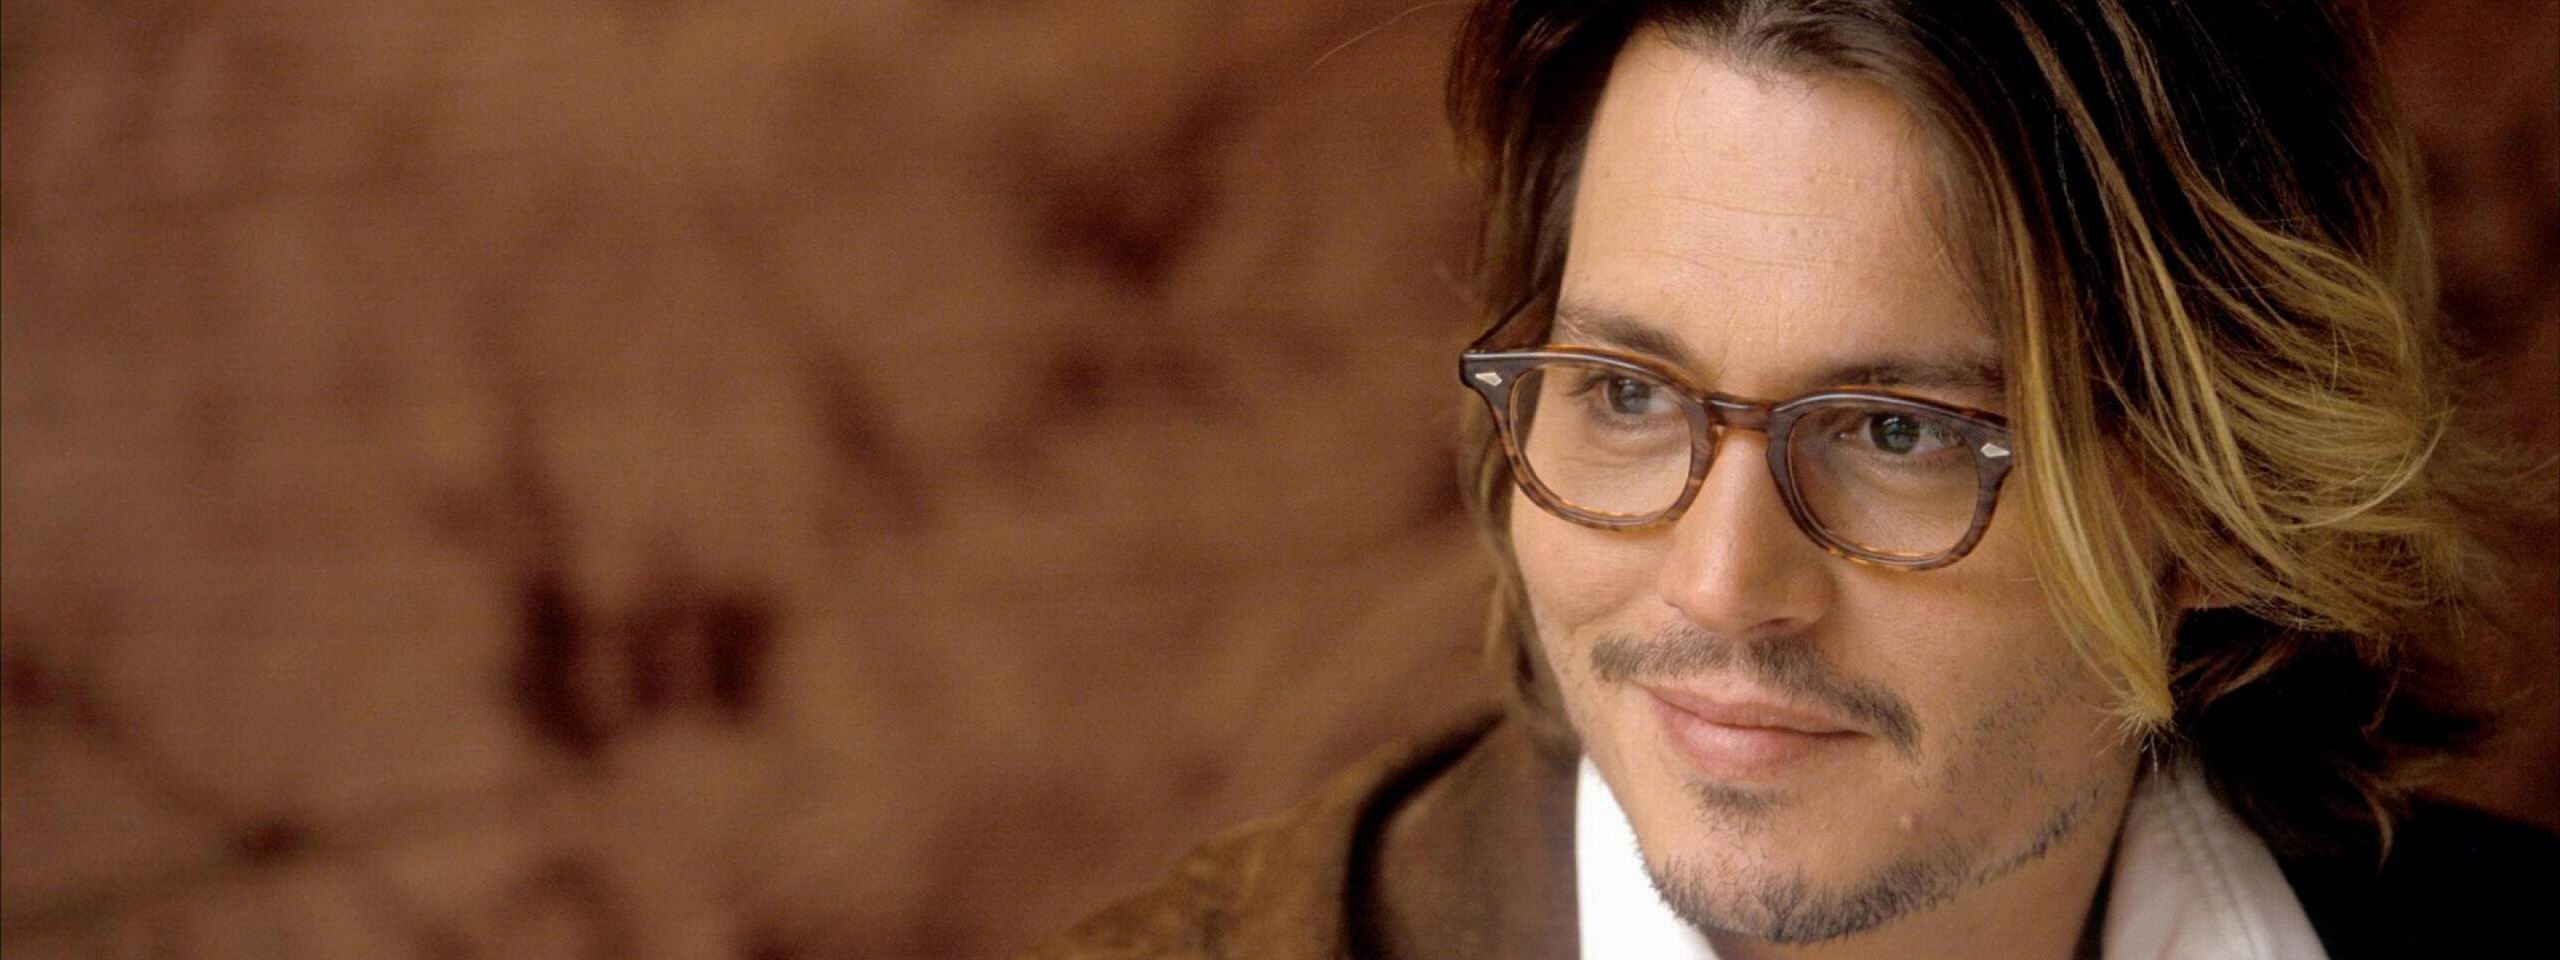 Johnny Depp Actor Celebrity